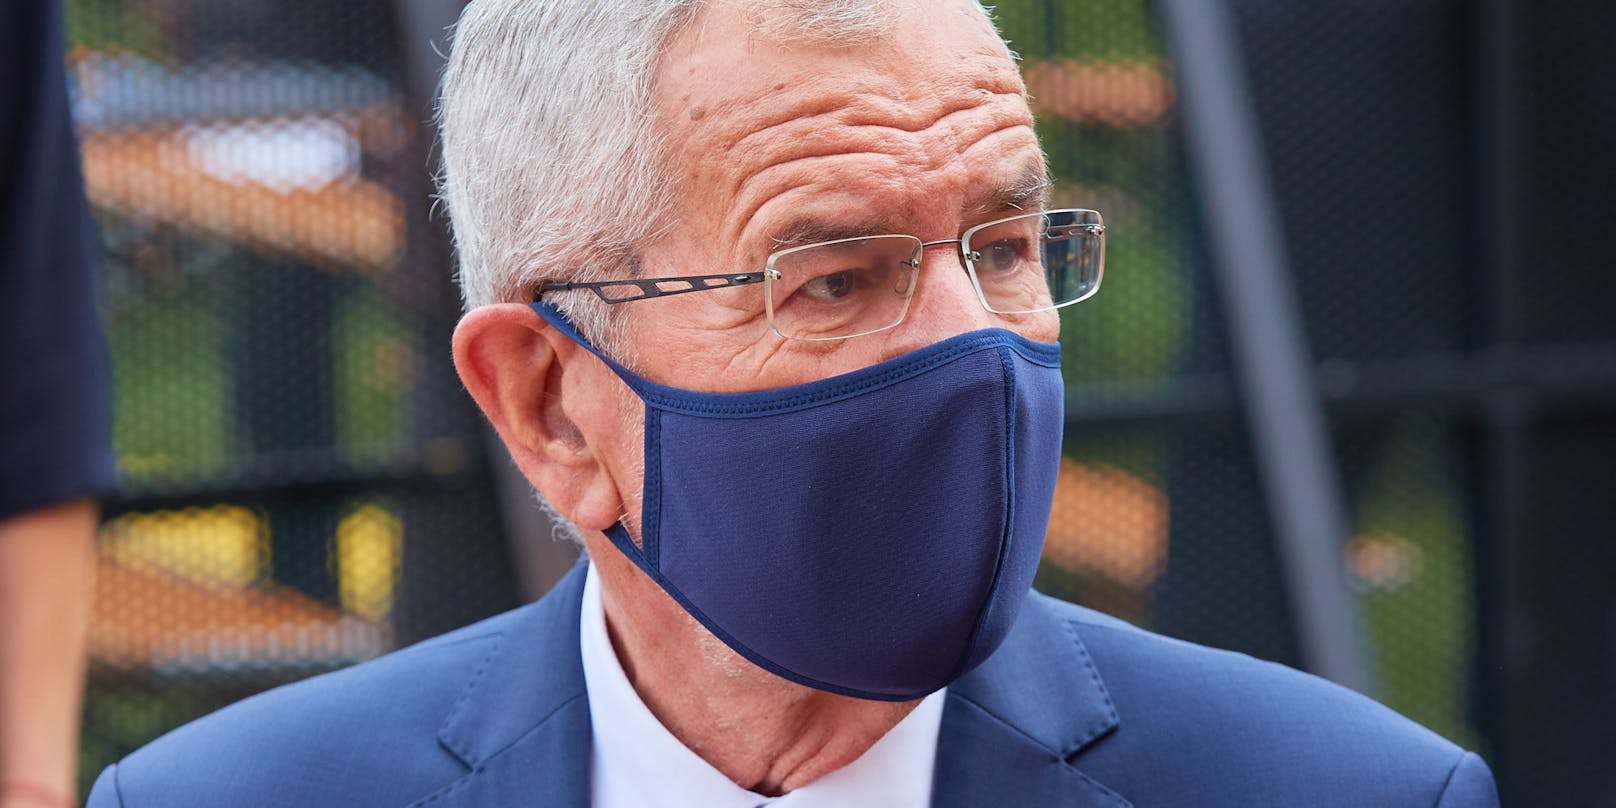 Bundespräsident Alexander Van der Bellen mit Mund-Nasen-Schutz